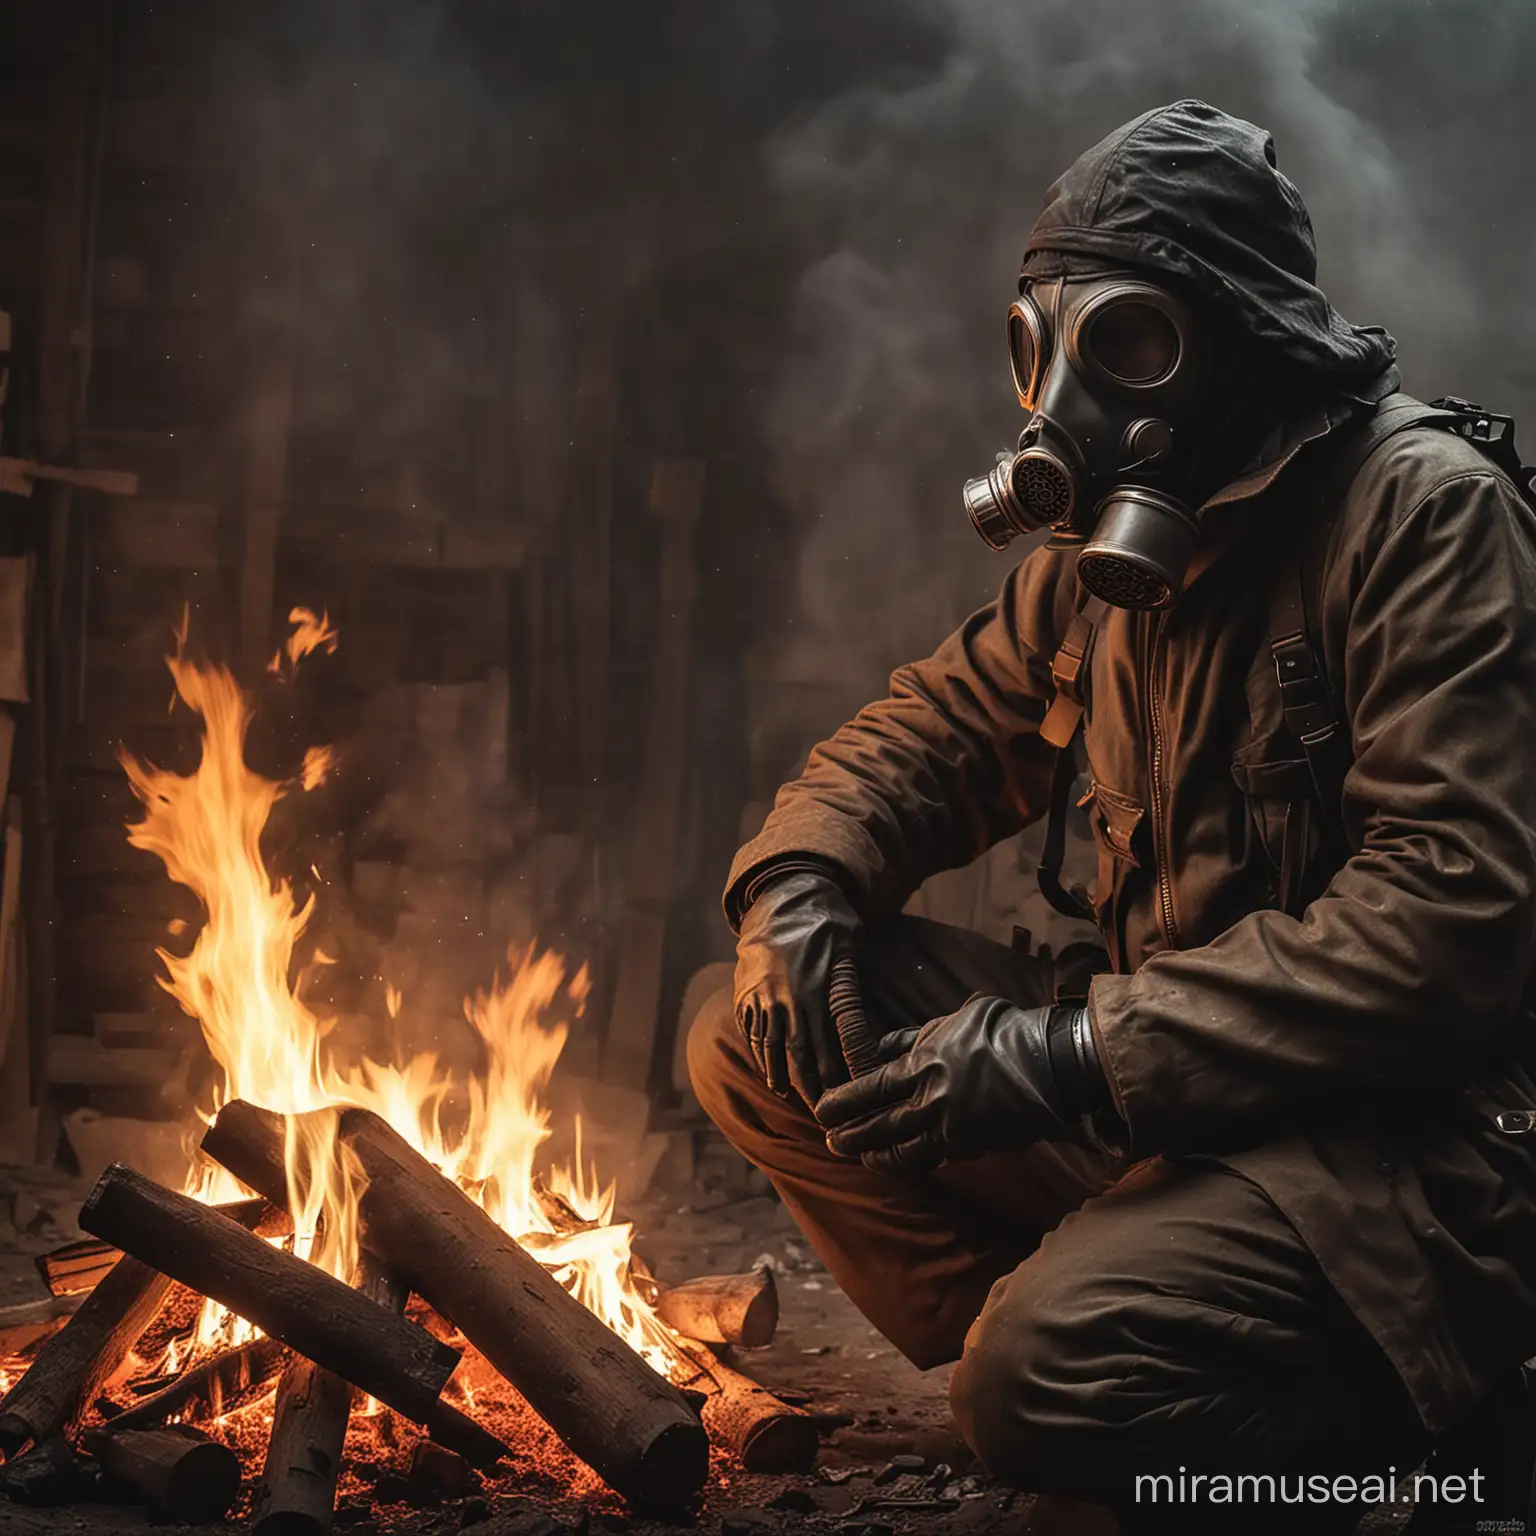 Man Wearing Gas Mask Near Fire in Apocalyptic Scene